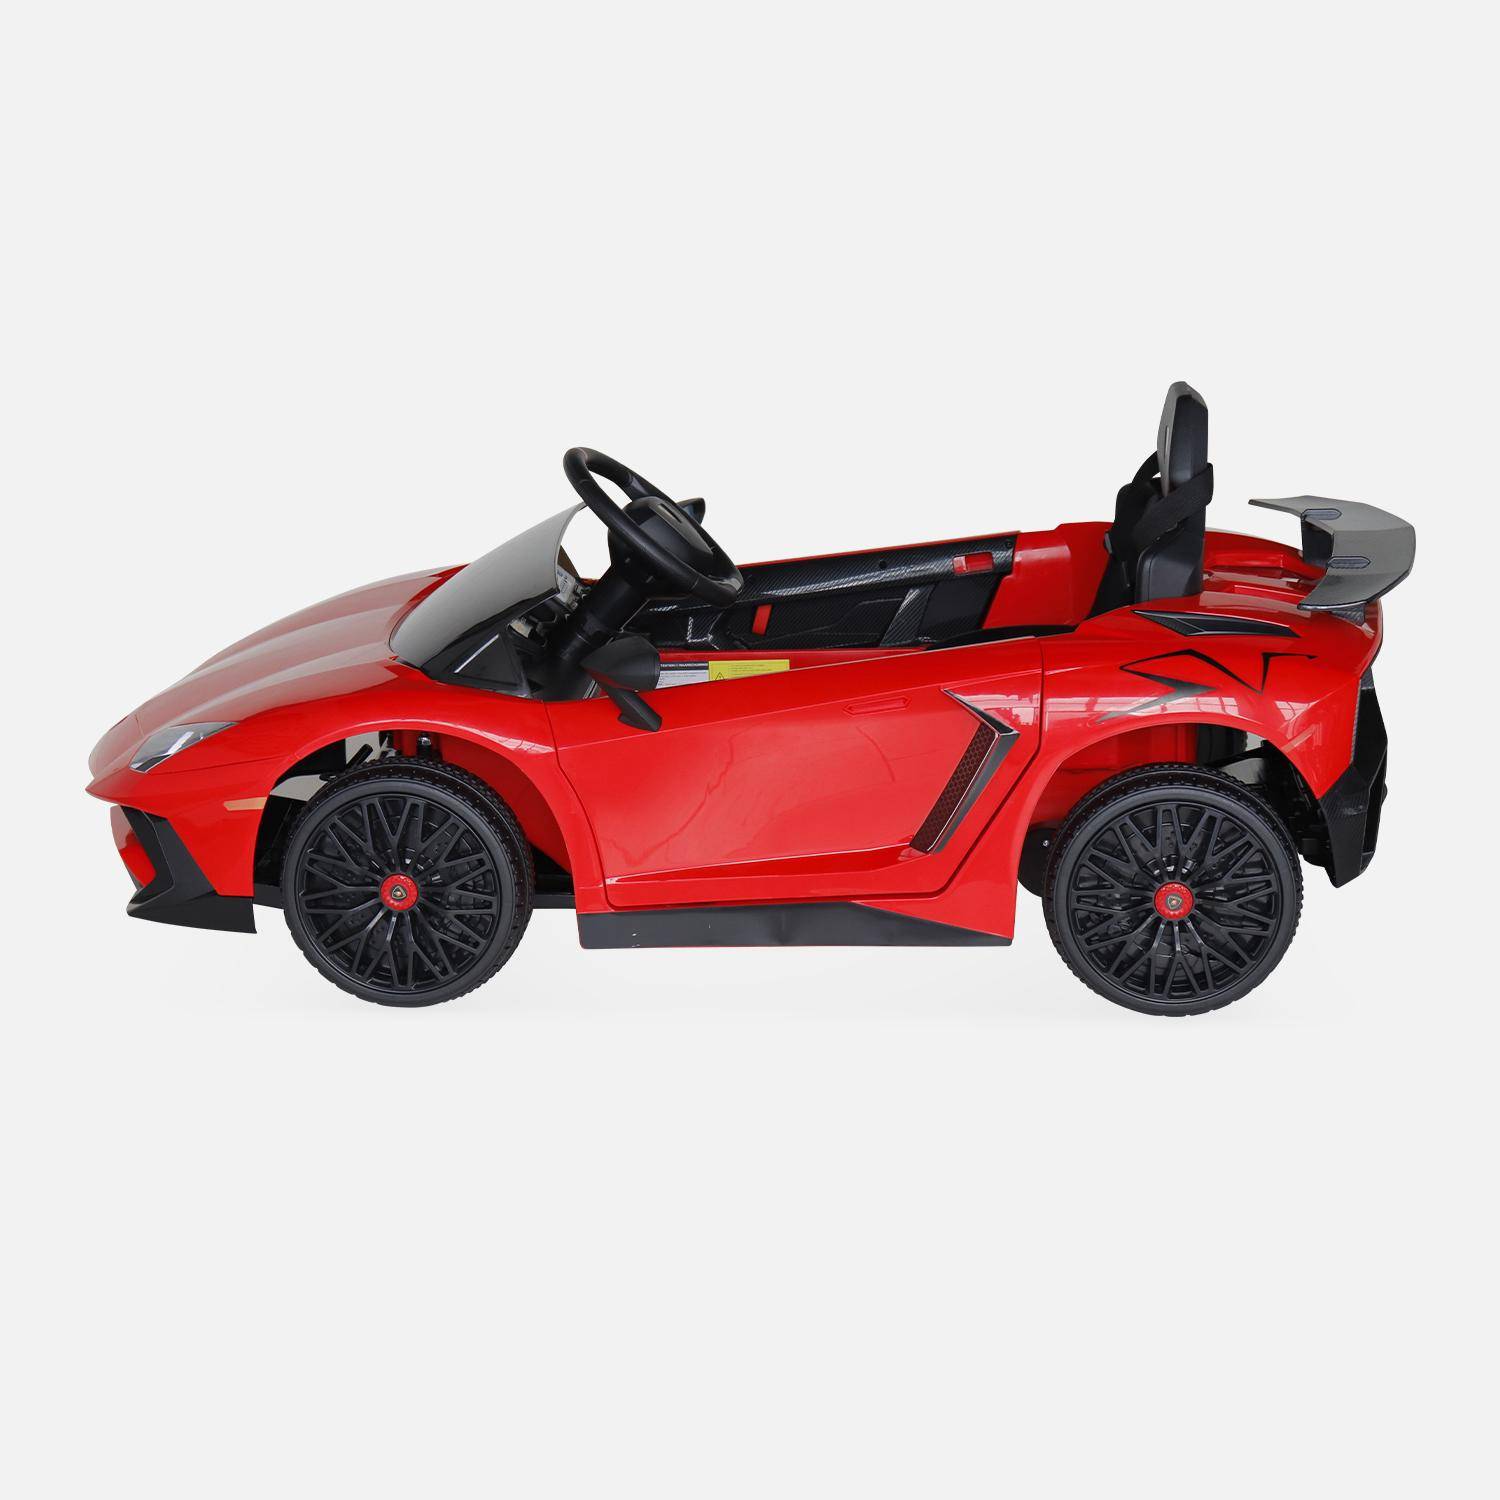 12V Lamborghini elektrische kinderauto, rood, 1 zitplaats, met autoradio, afstandsbediening, MP3, USB-poort en koplampen. Snelle levering, 2 jaar garantie. Photo4